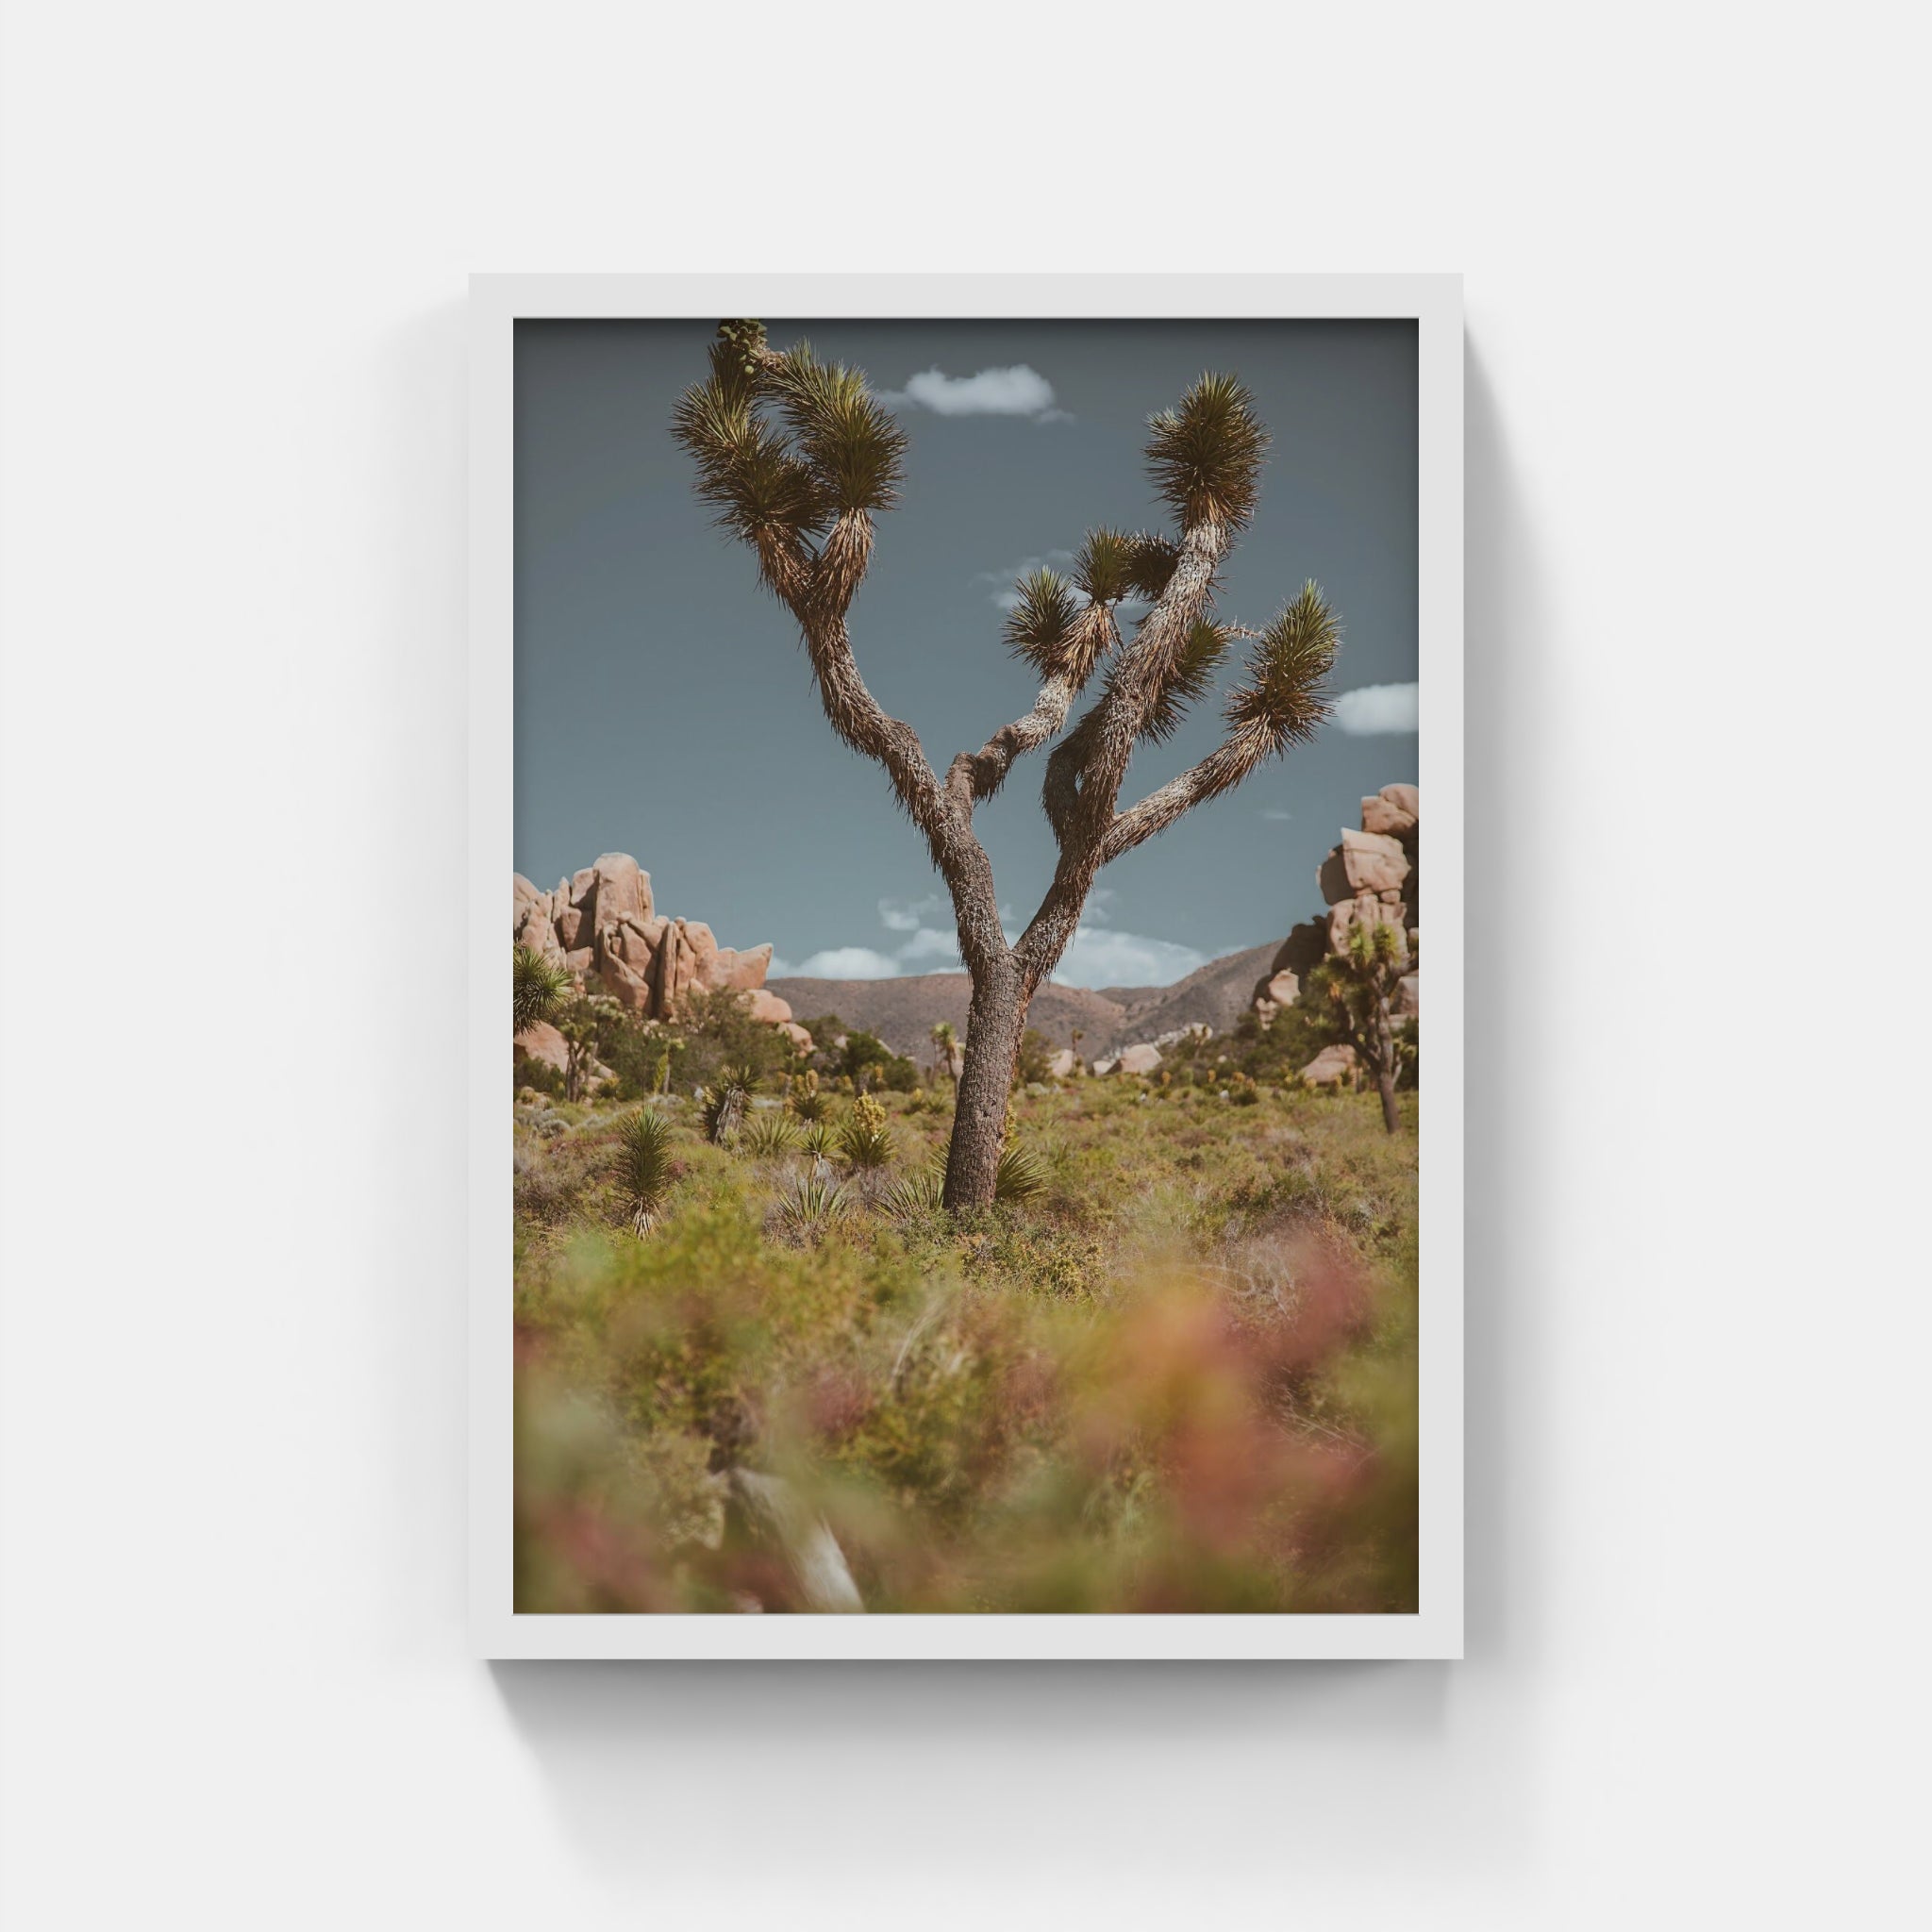 Desert Tree